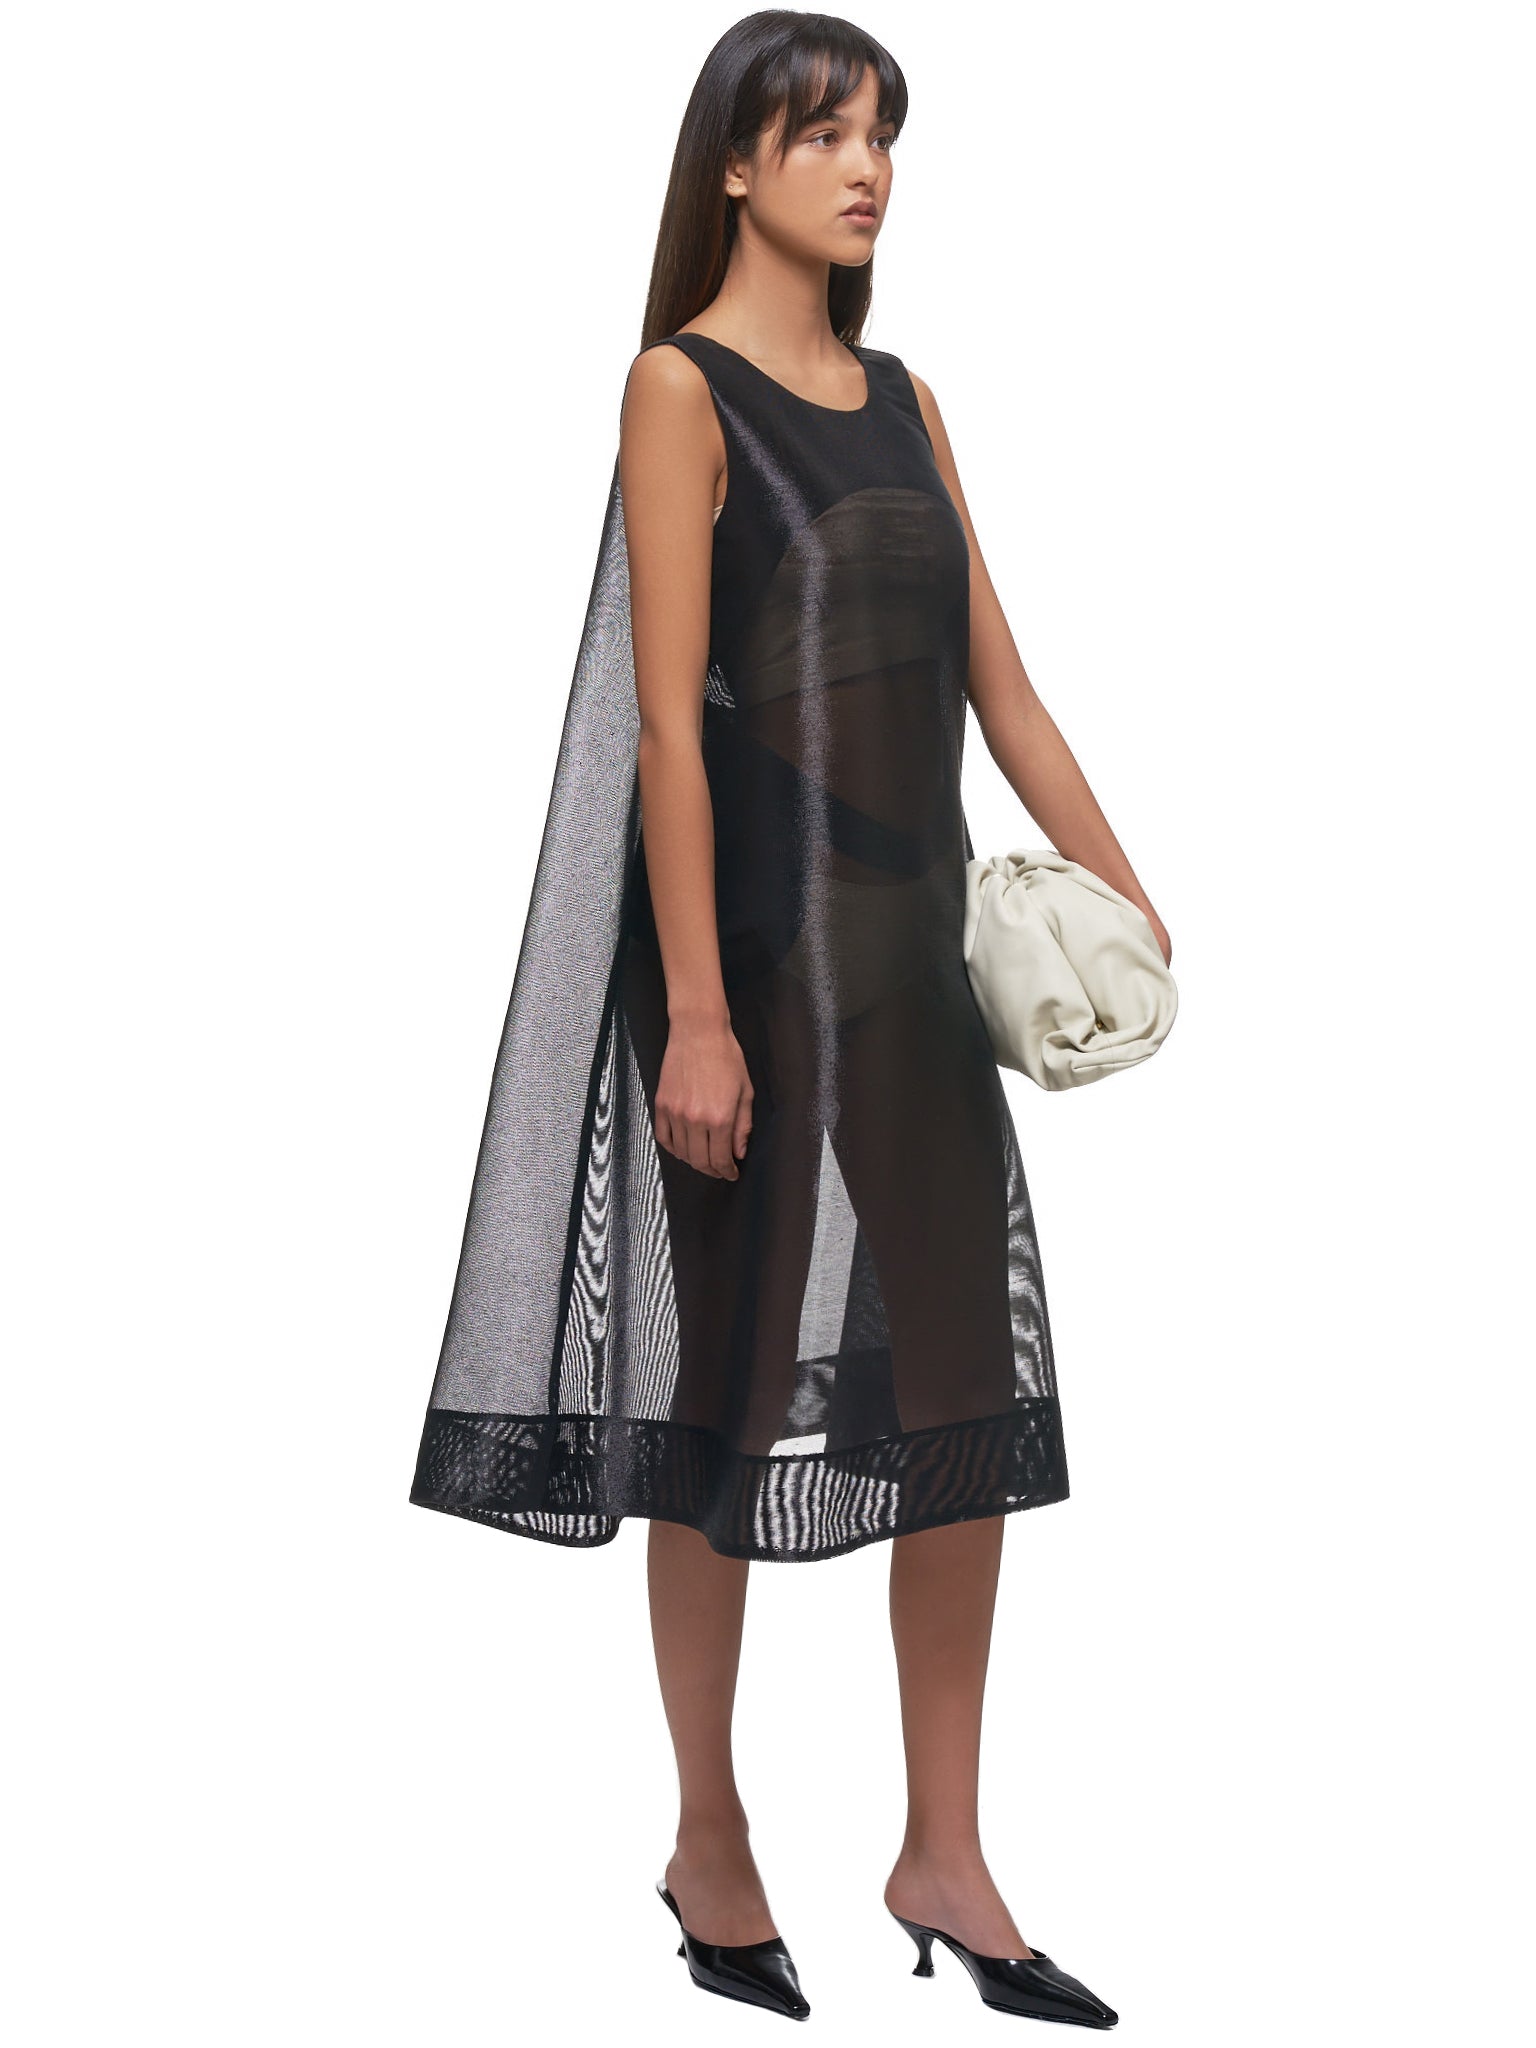 Melitta Baumeister Dress - Hlorenzo Style